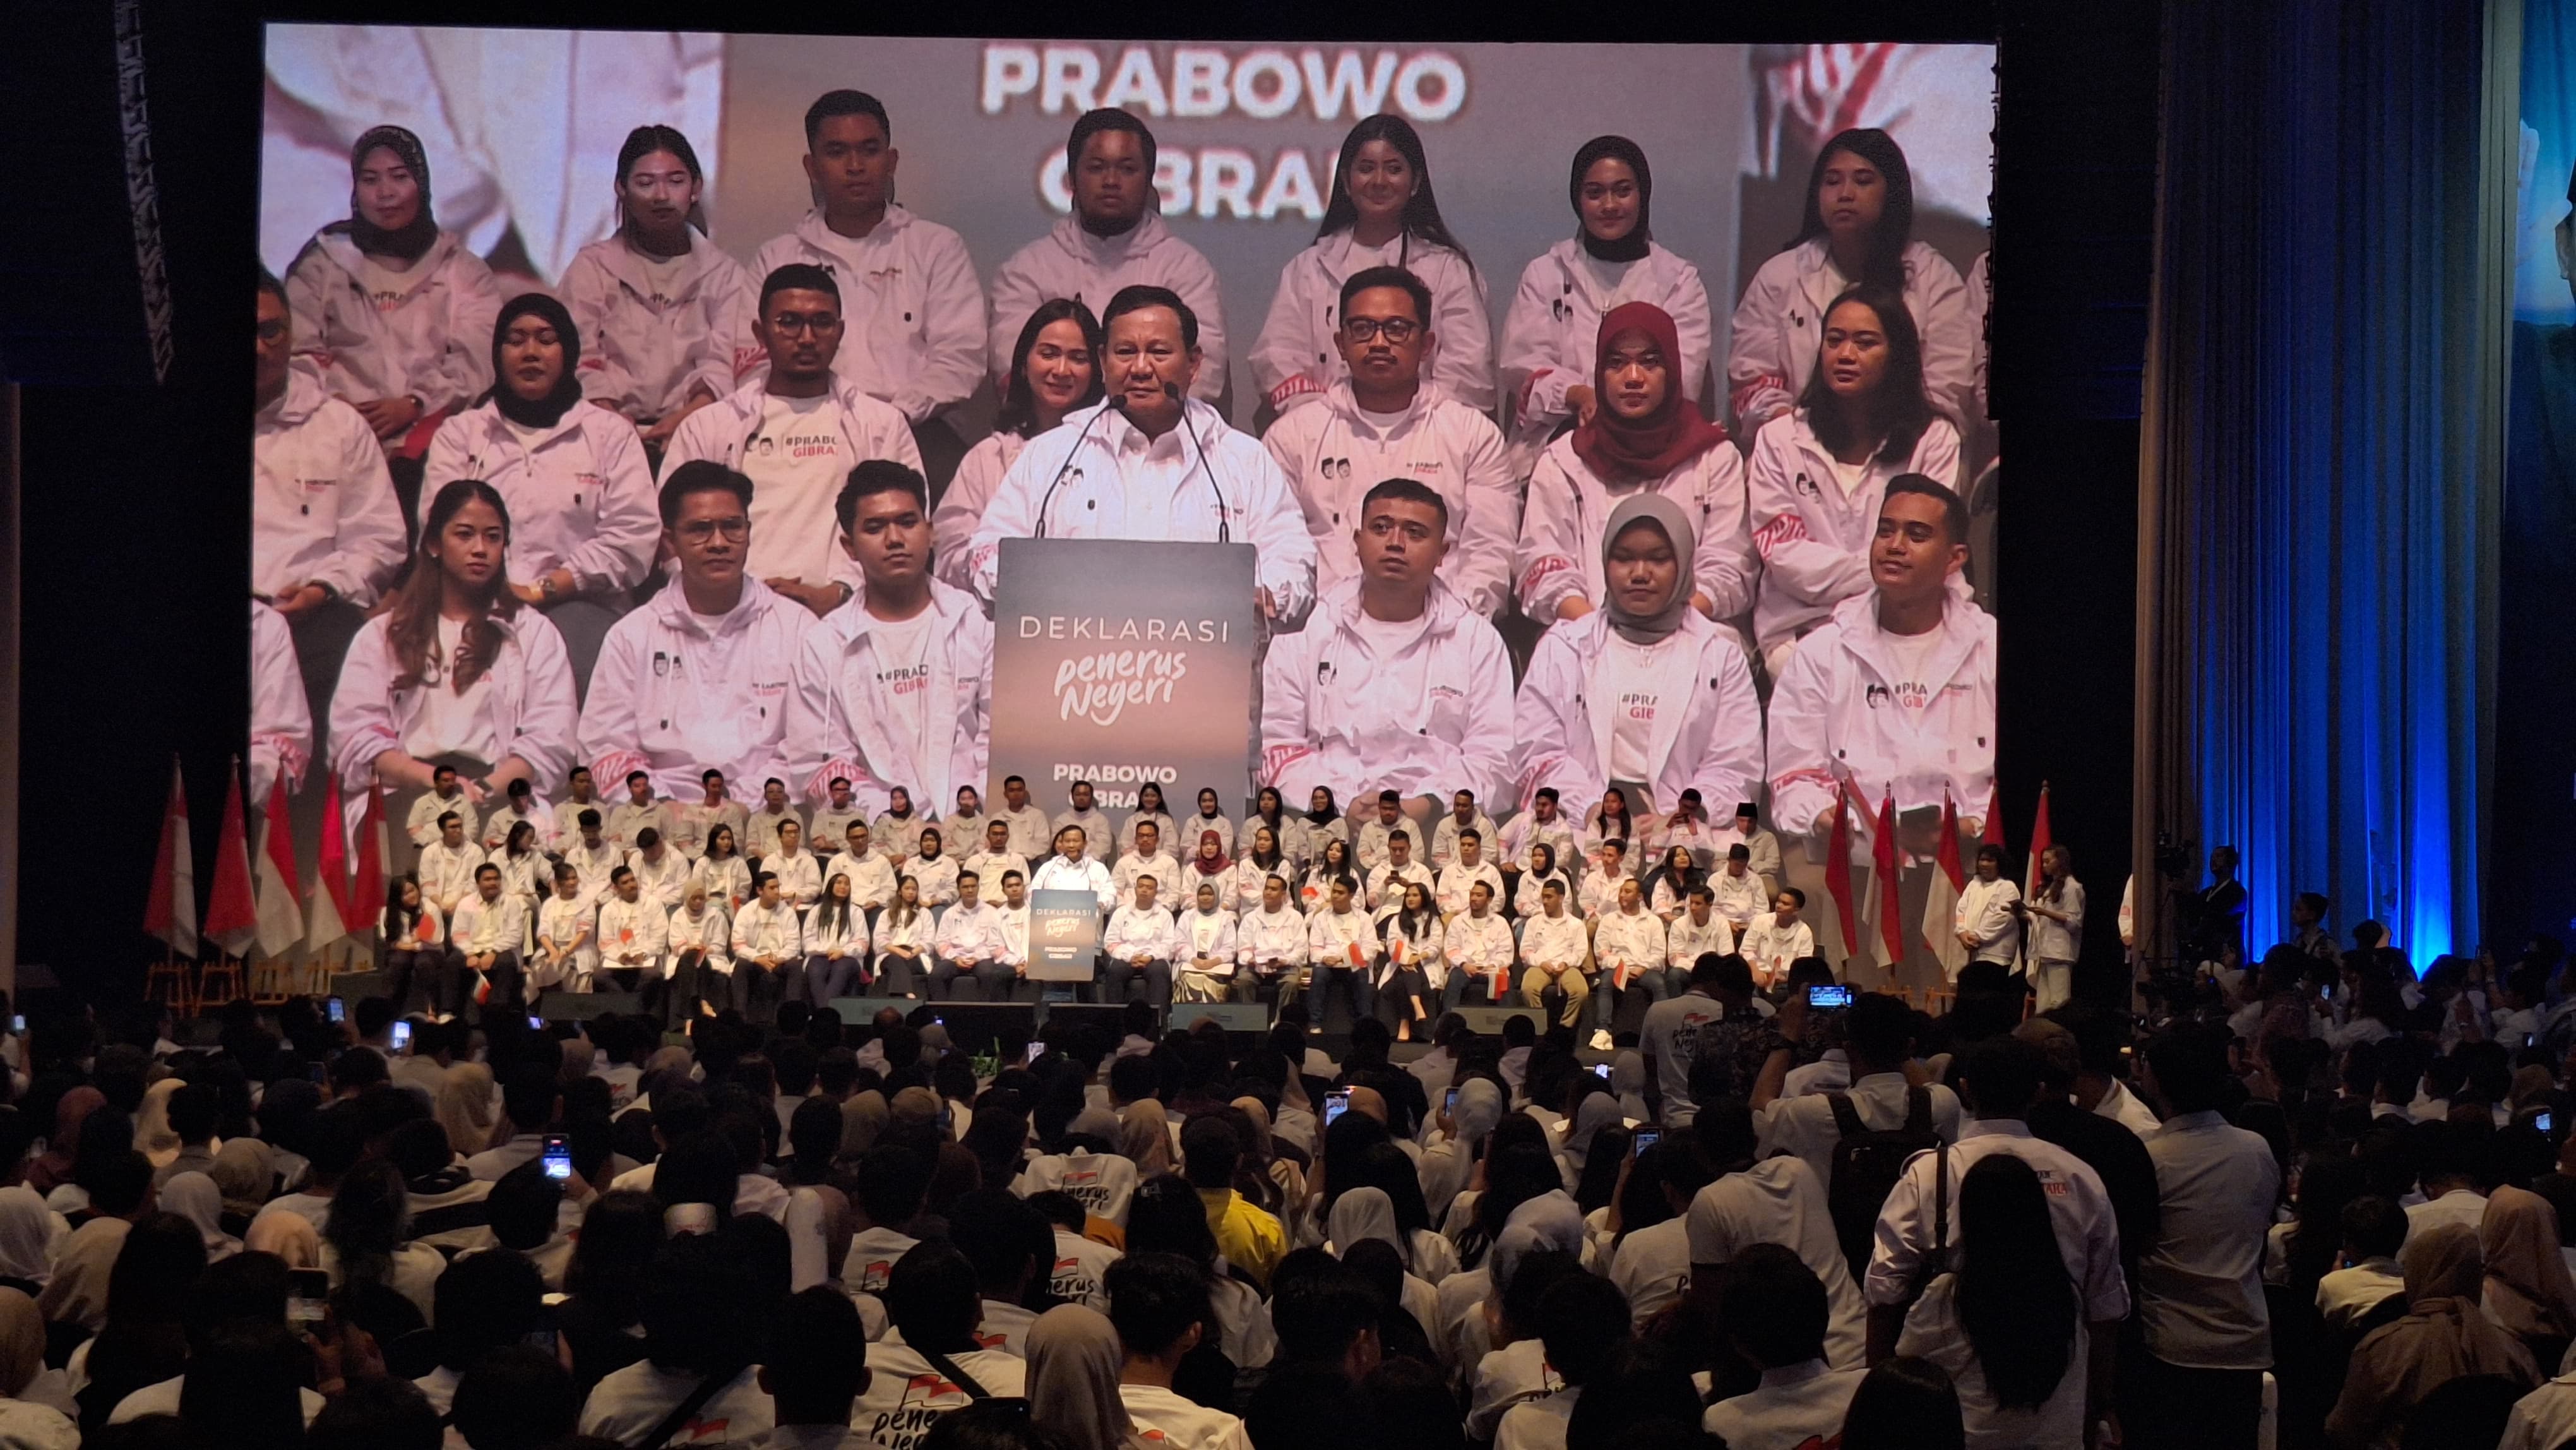 Prabowo di acara deklarasi Pemuda Penerus Negeri di Djakarta Theater (SinPo.id/ Khaerul Anam)